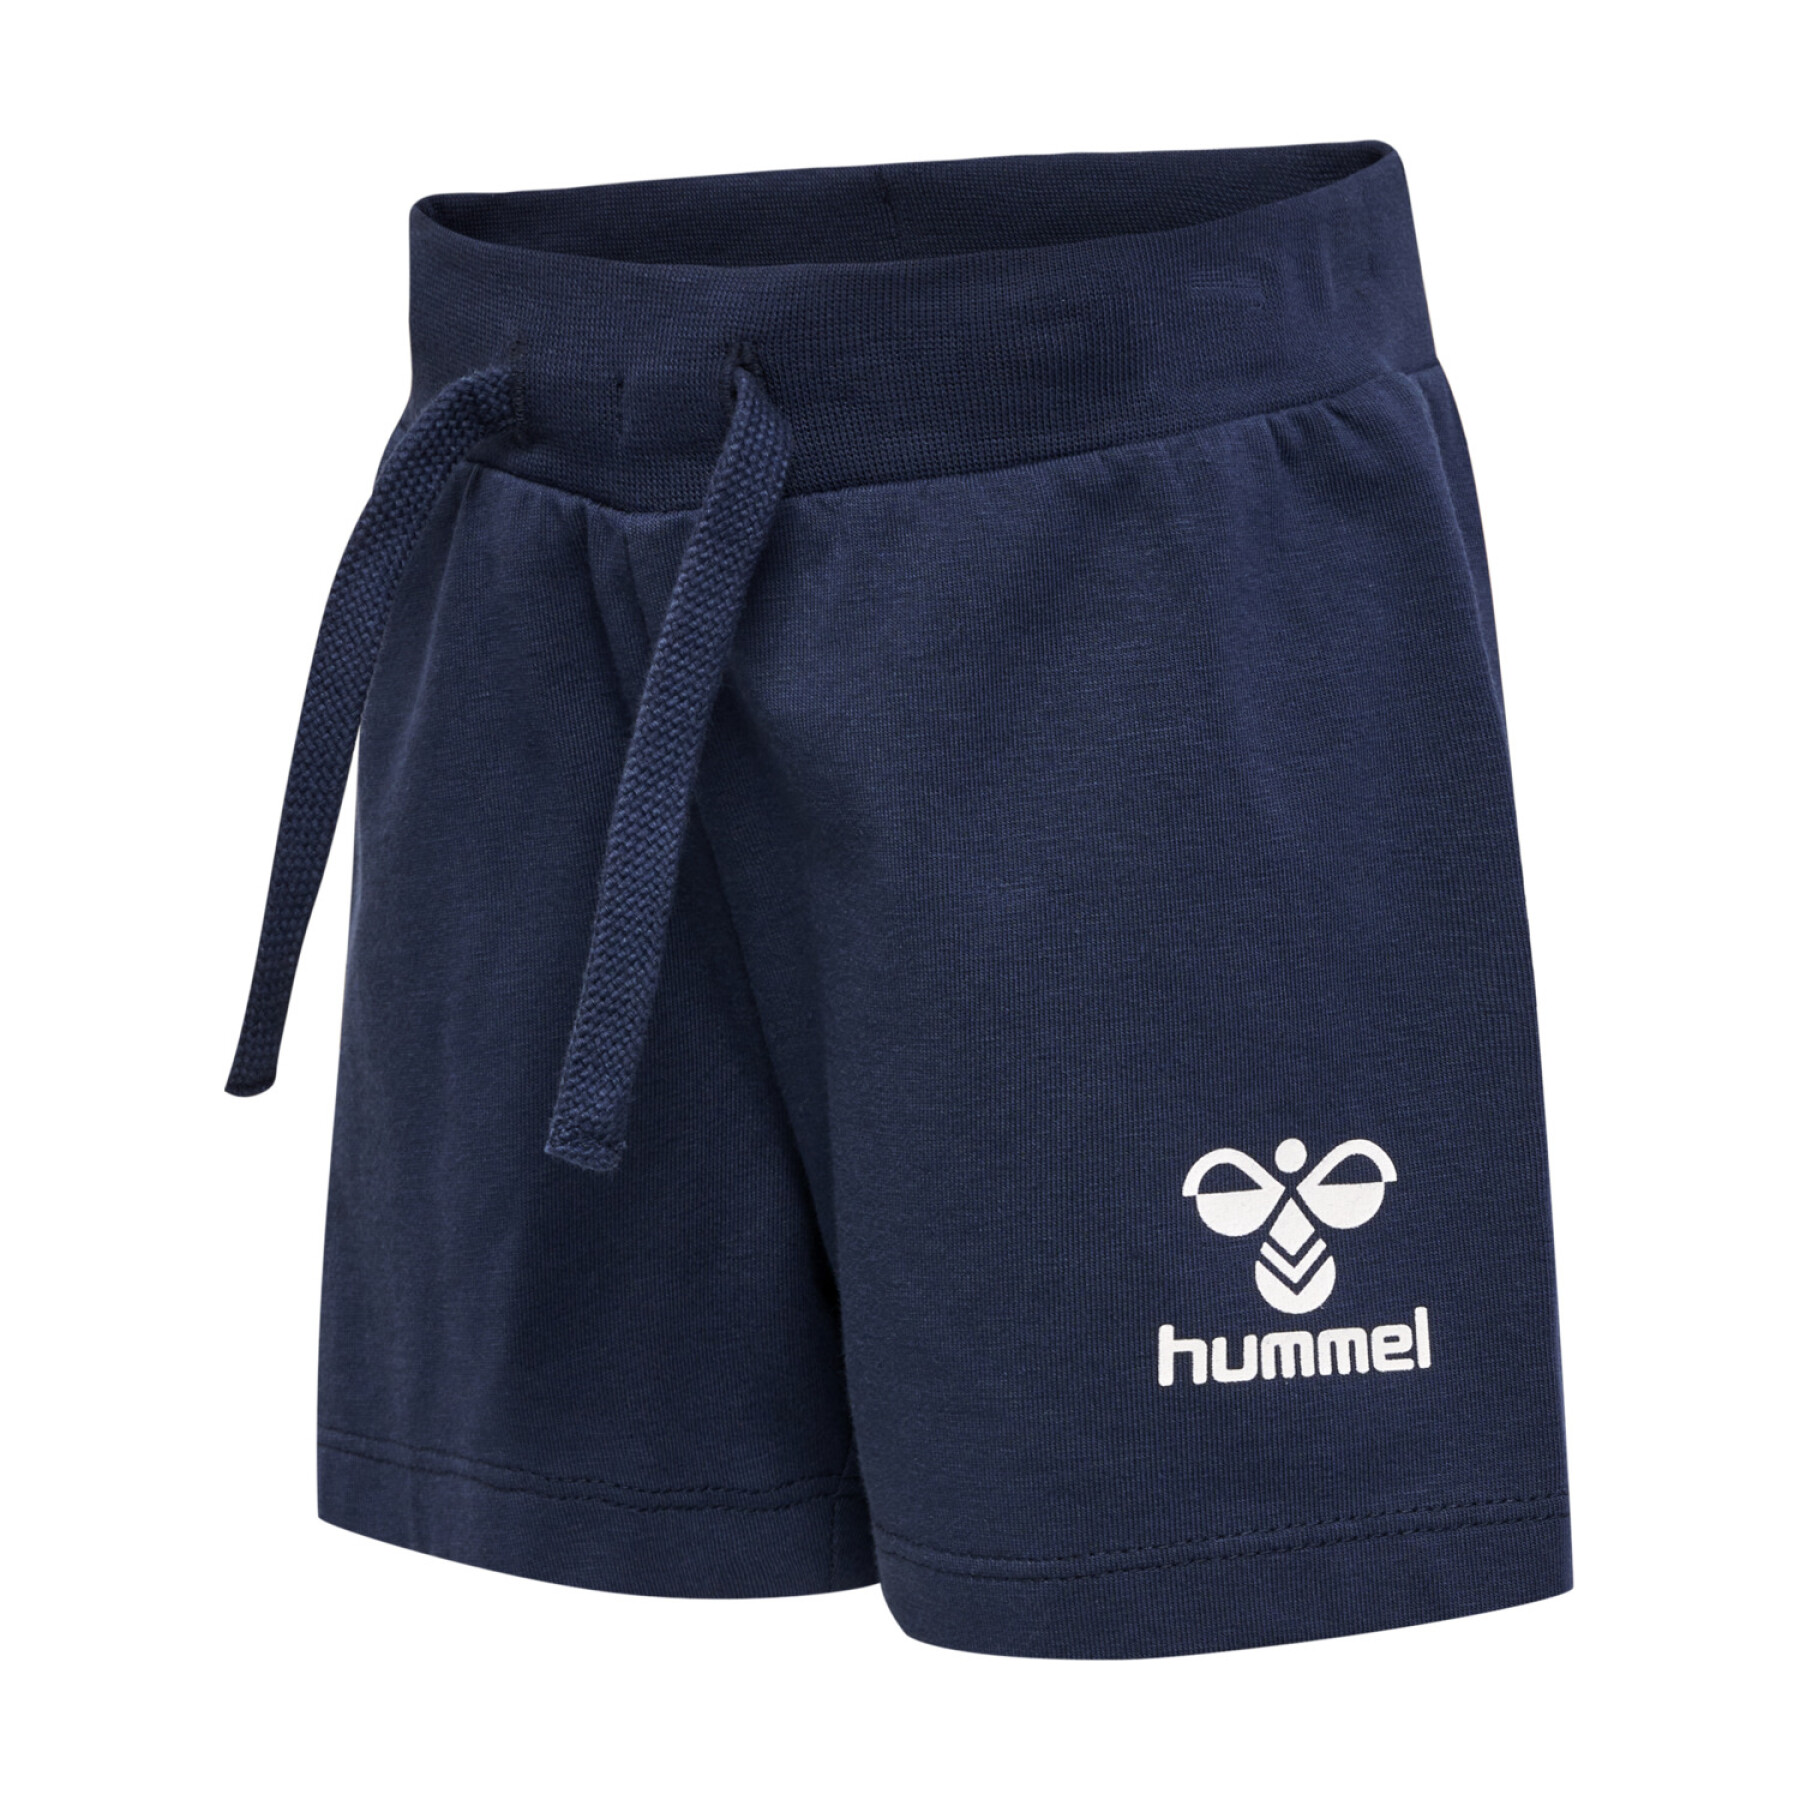 Pantalón corto de bebé Hummel Joc